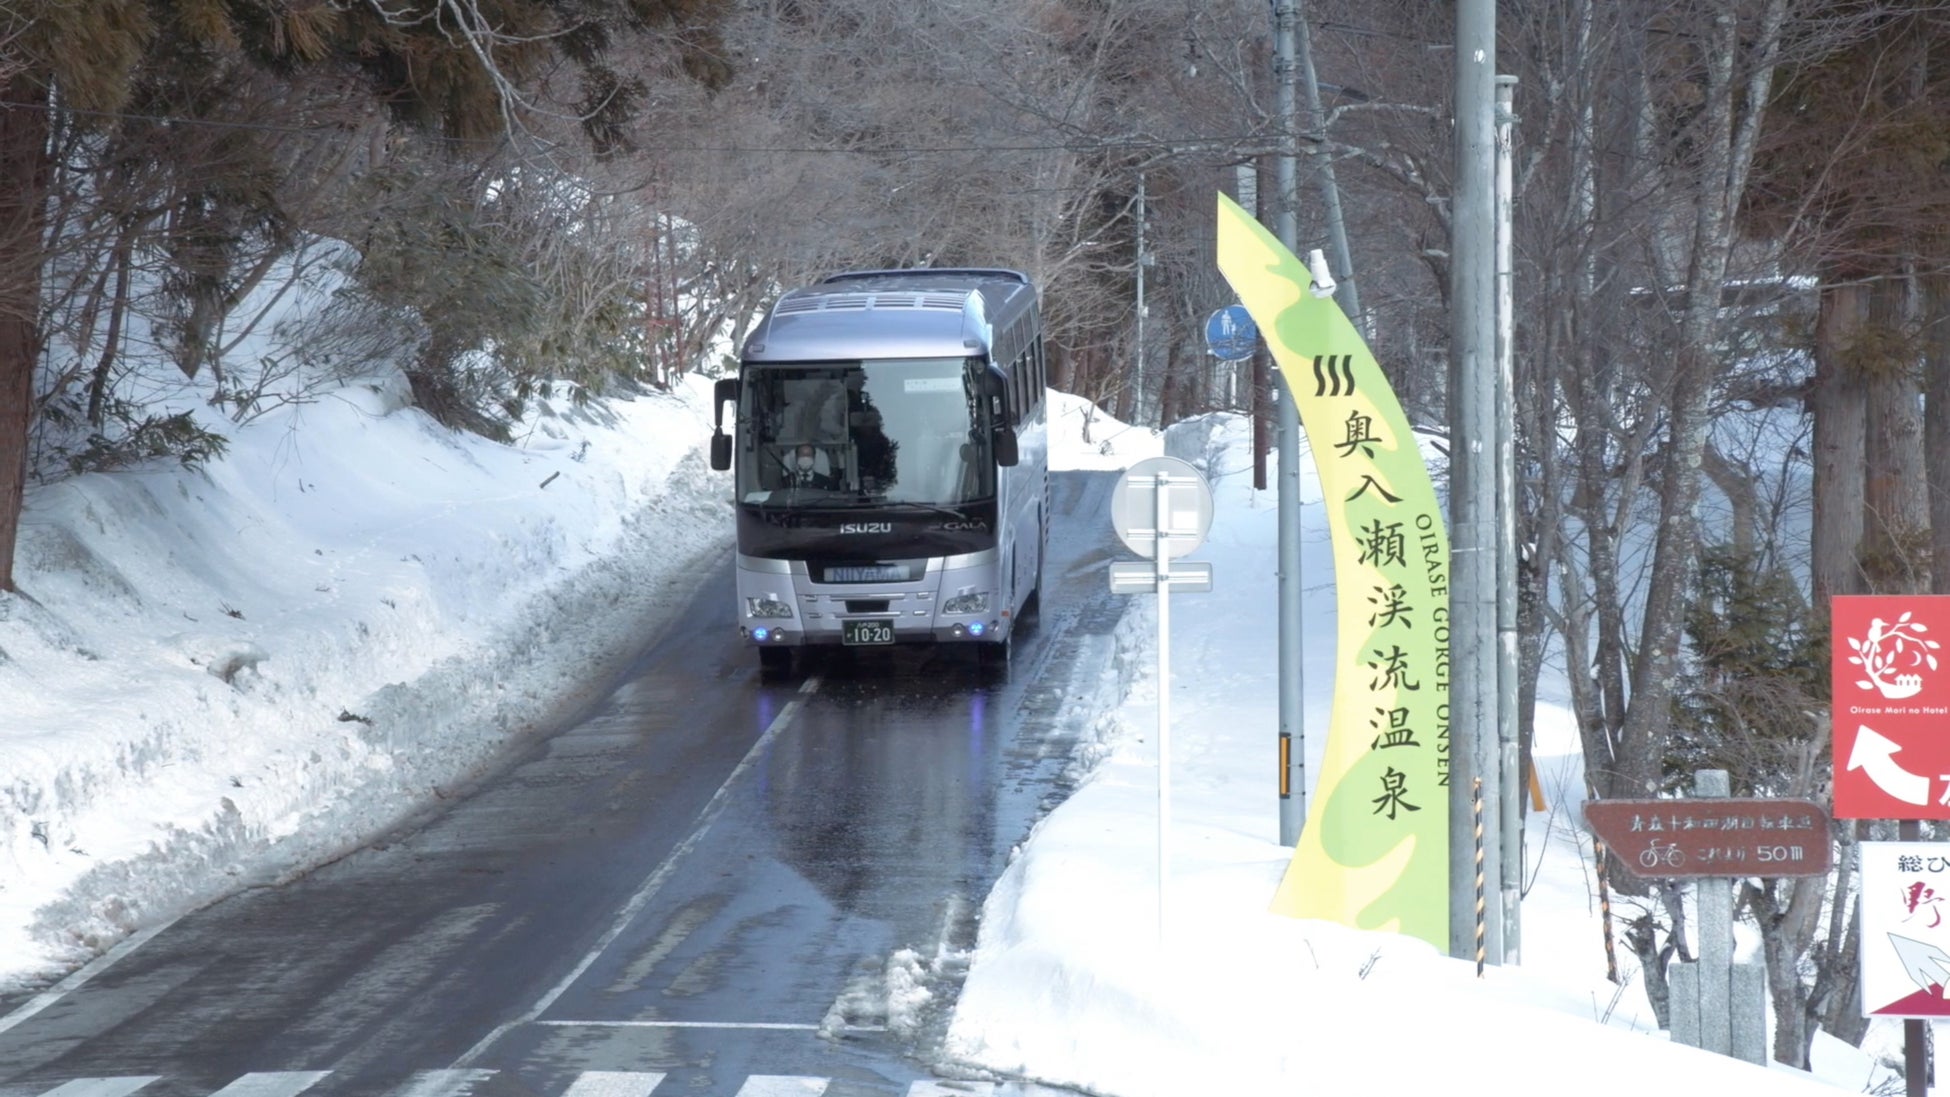 冬期観光に便利な「十和田湖往復シャトルバス」が運行